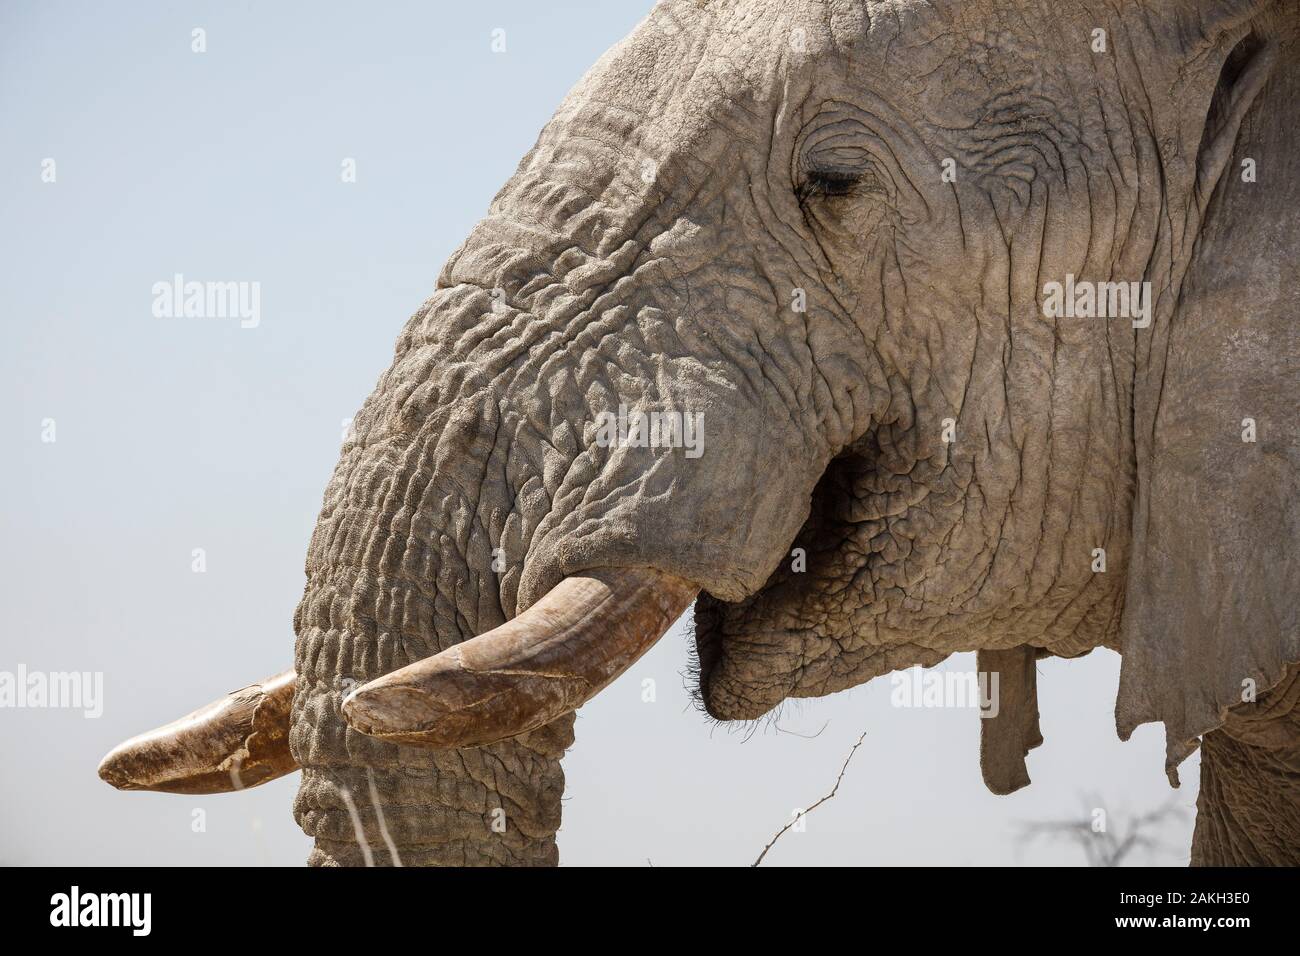 Namibia, Oshikoto province, Etosha National Park, african bush elephant (Loxodonta africana) Stock Photo